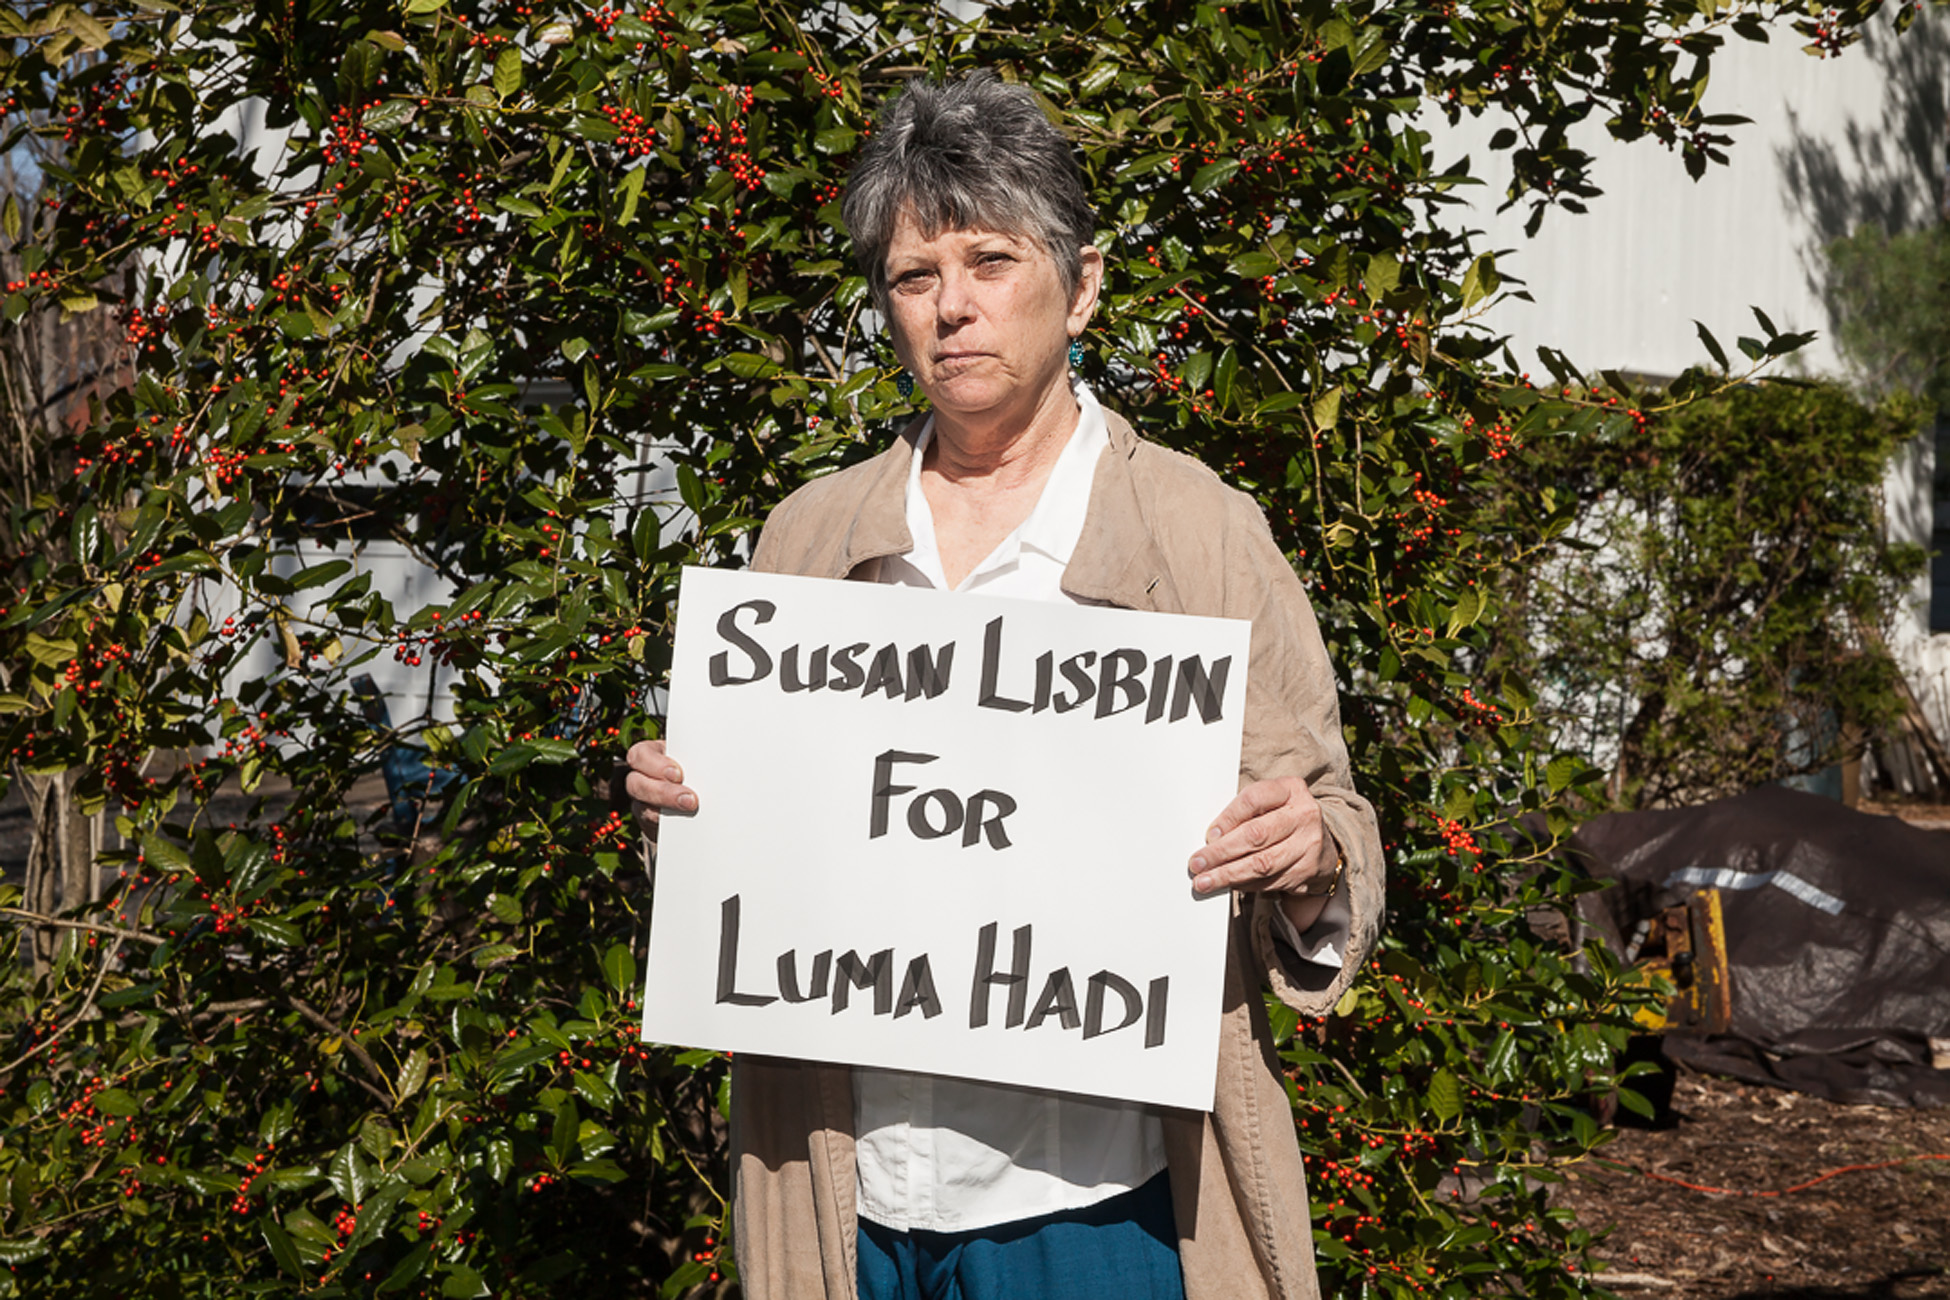 Susan Lisbin for Luma Hadi